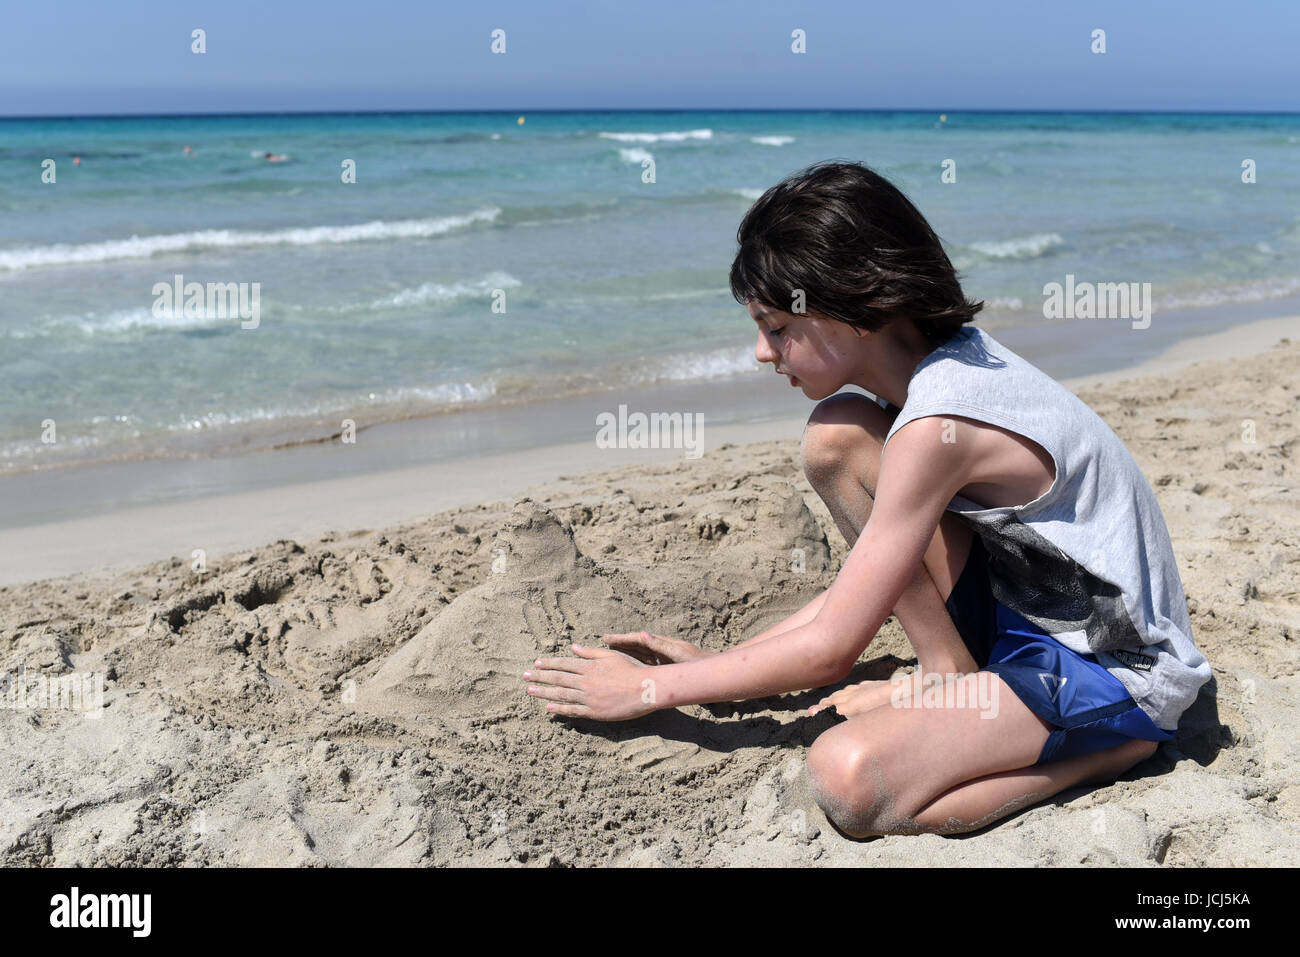 Chico de escultura en arena en una playa de arena fina, Menorca, España Foto de stock